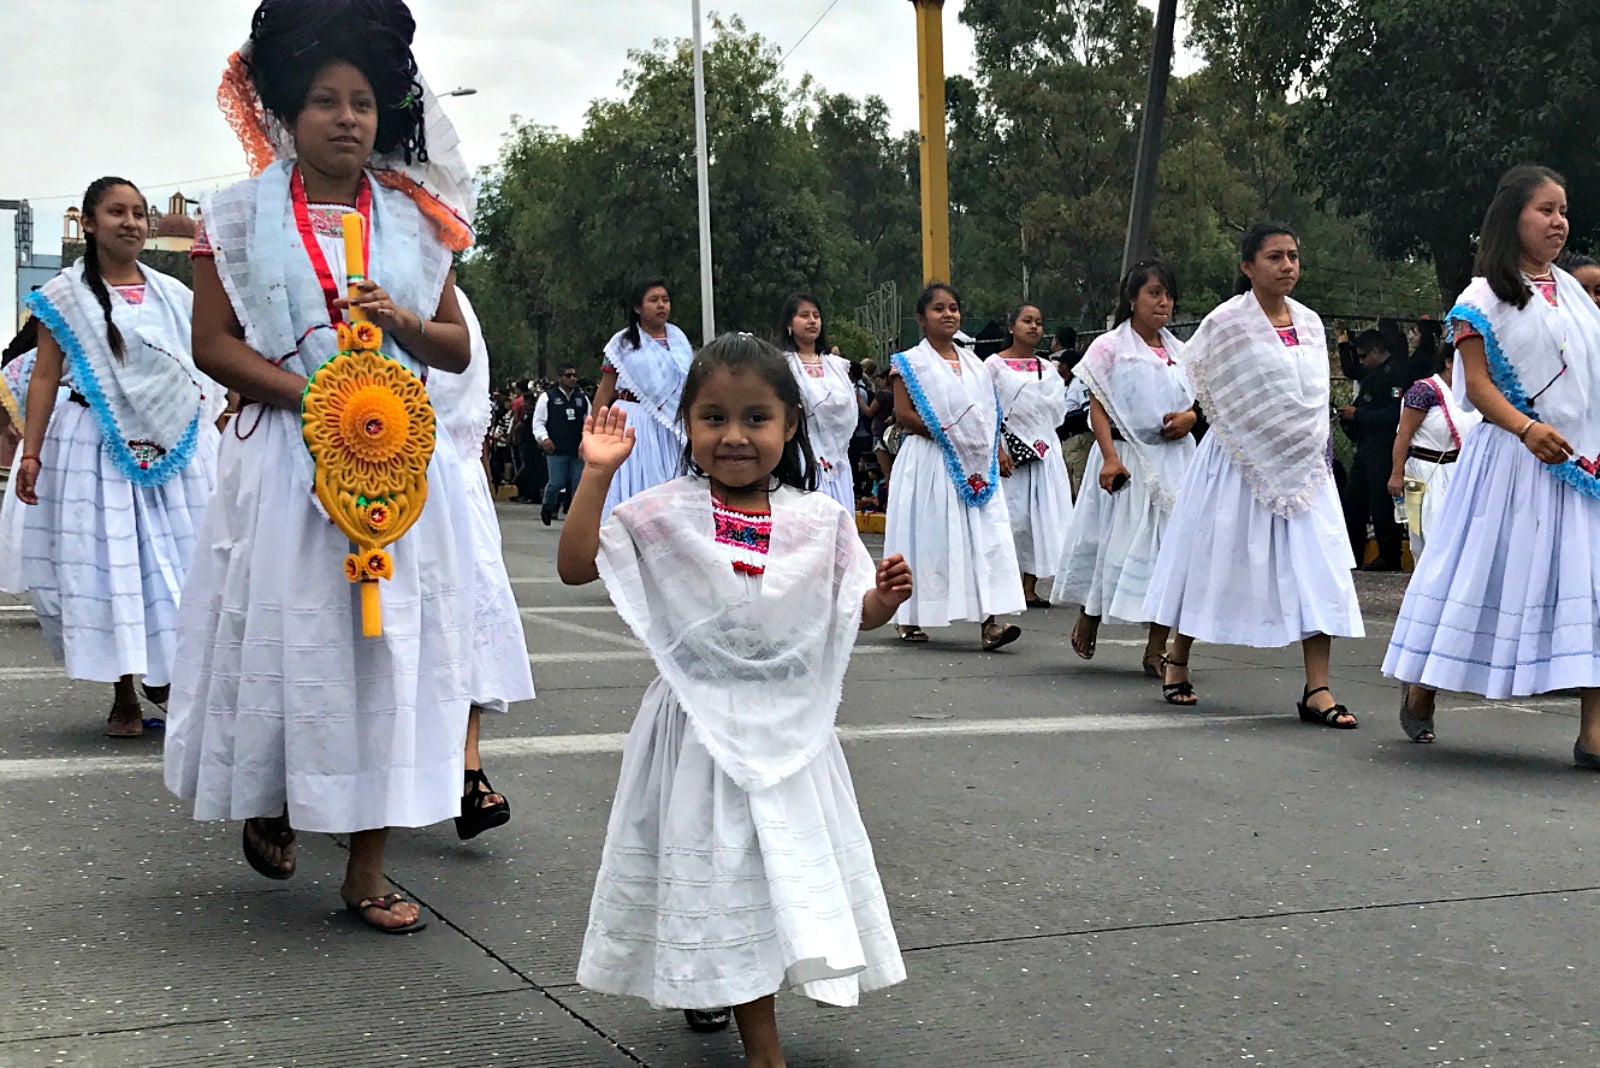 Cinco de Mayo parade in Puebla, Mexico